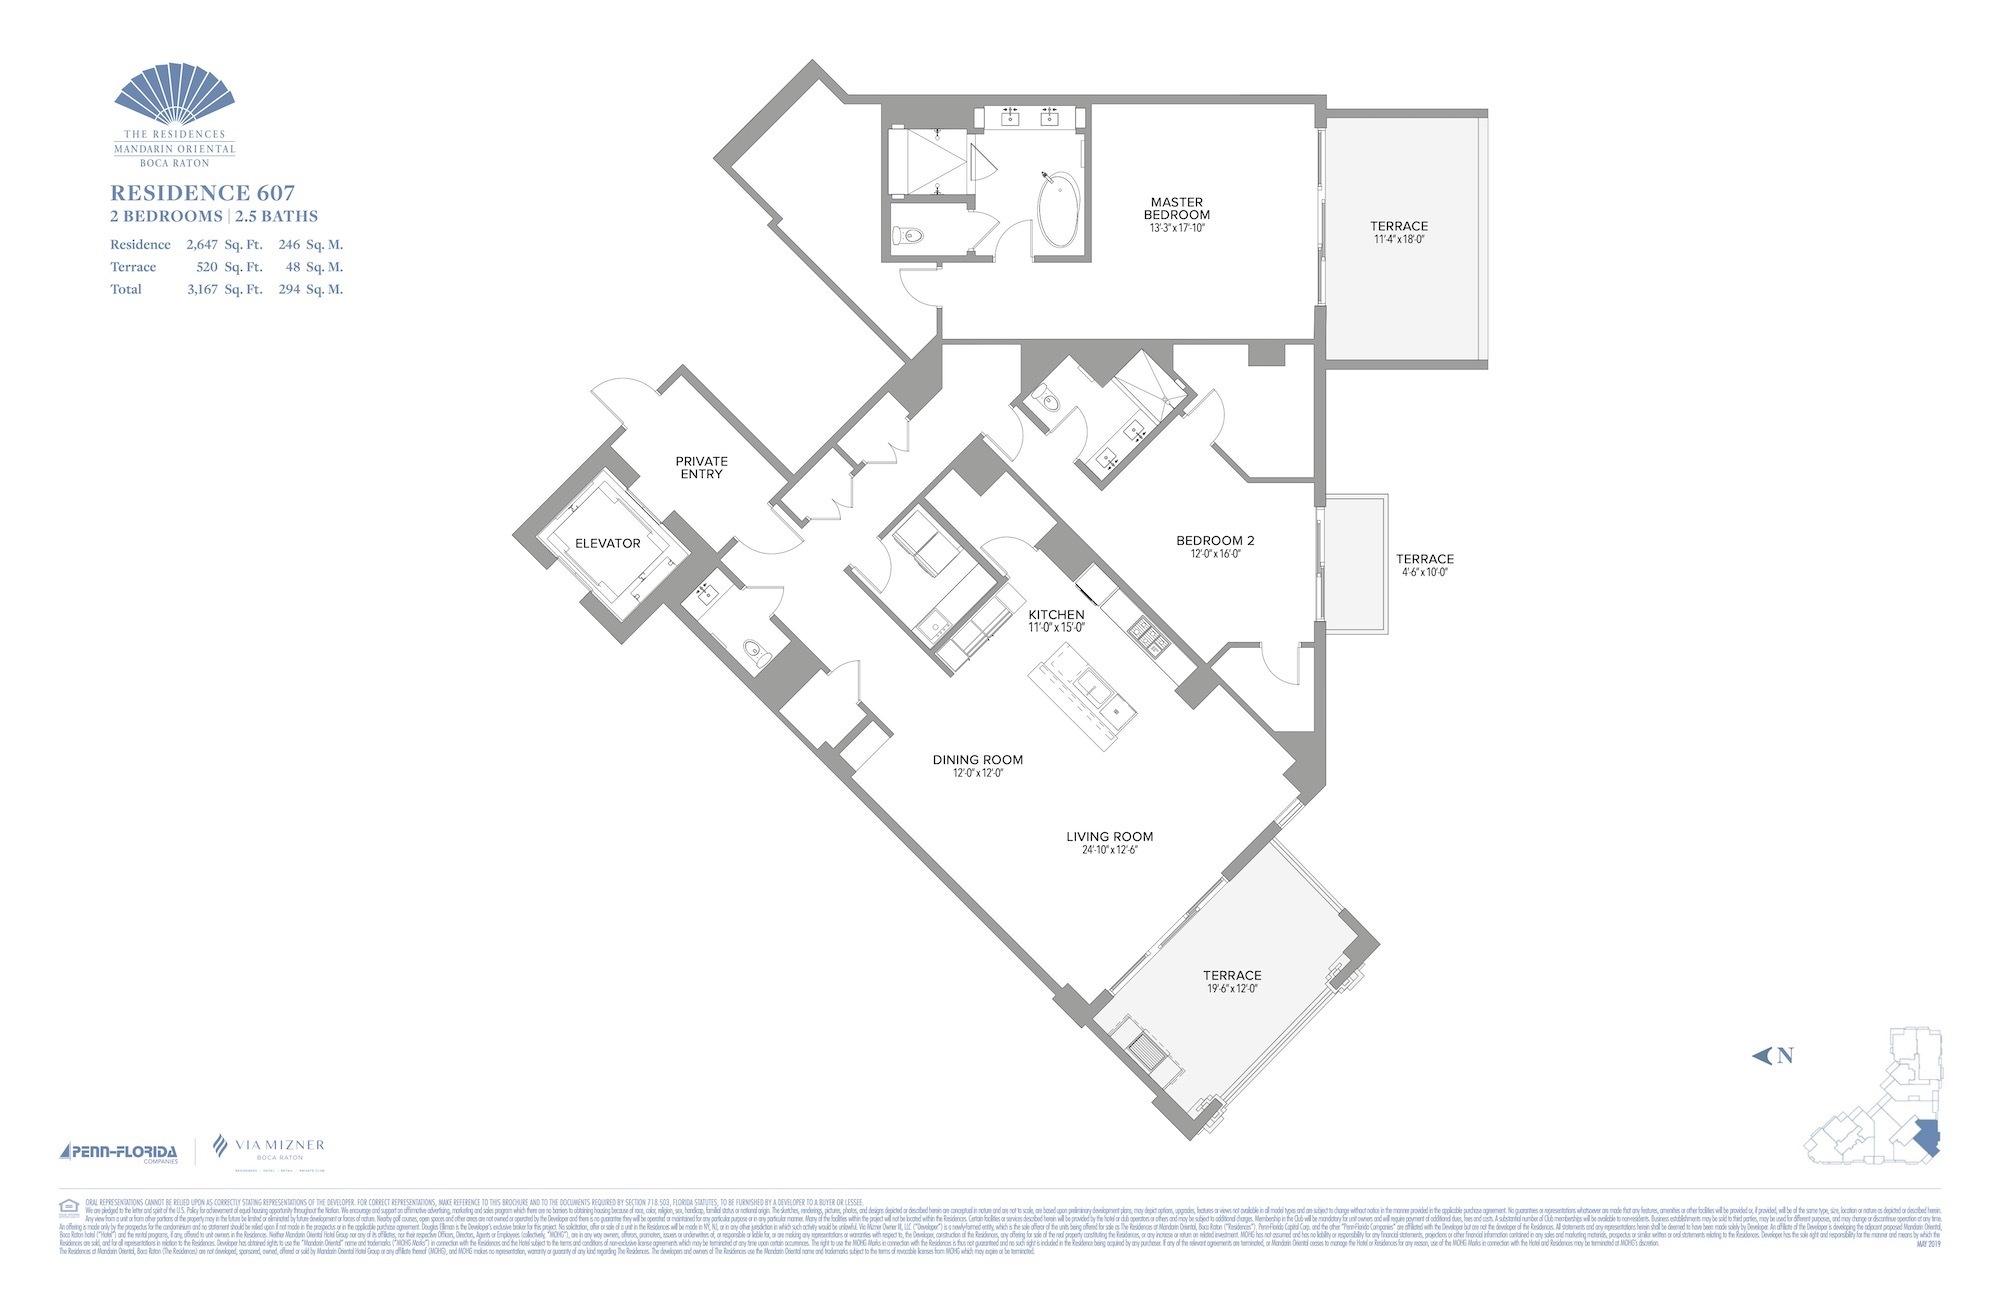 Floor Plan for Residence at Mandarin Oriental Floorplans, Residence 607